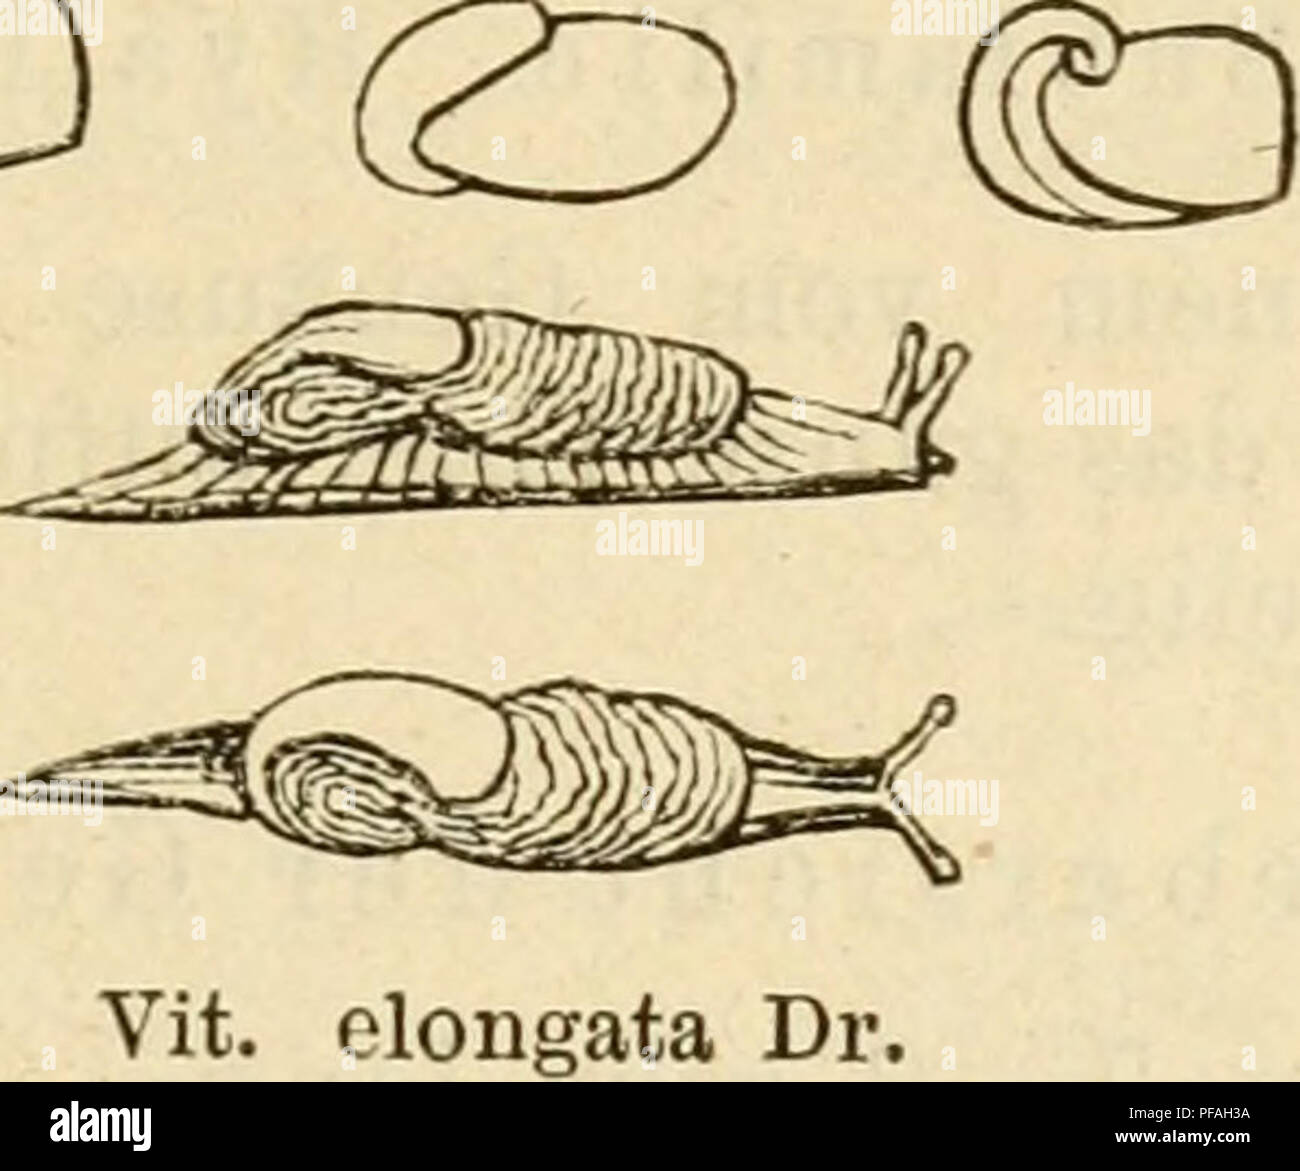 . Deutsche excursions-mollusken-fauna. Mollusks. 61 5. Vitrina elongata, Draparnaud. Vitrina elongata, Draparnaud, hist. 1805. p. 120. t. 5. fig. 40—42. — C. Pfeiffer, Naturg. I. p. 48. t. 3. fig. 3. — Rossm., Icon. fig. 26. — Küster in Chemnitz 2. ed. p. 11. t. 1. fig. 38—41. HifaUiia elongata, Stiider, kurz. Verz. p. 11. 1820. Limacina vitreu ß., Hartmanu, Nexxe Alp, I. p. 246. — elongata, Hartmann, in Sturm. Fauna VL 5. Testacella Germanica, Oken, Lehrb. d. Nat. III. p. 312. Thier schlank, mit grossem weitem Mantel von schwarz- grauer Farbe; Mantel schwach gerunzelt, dunkler als das Thier,  Stock Photo